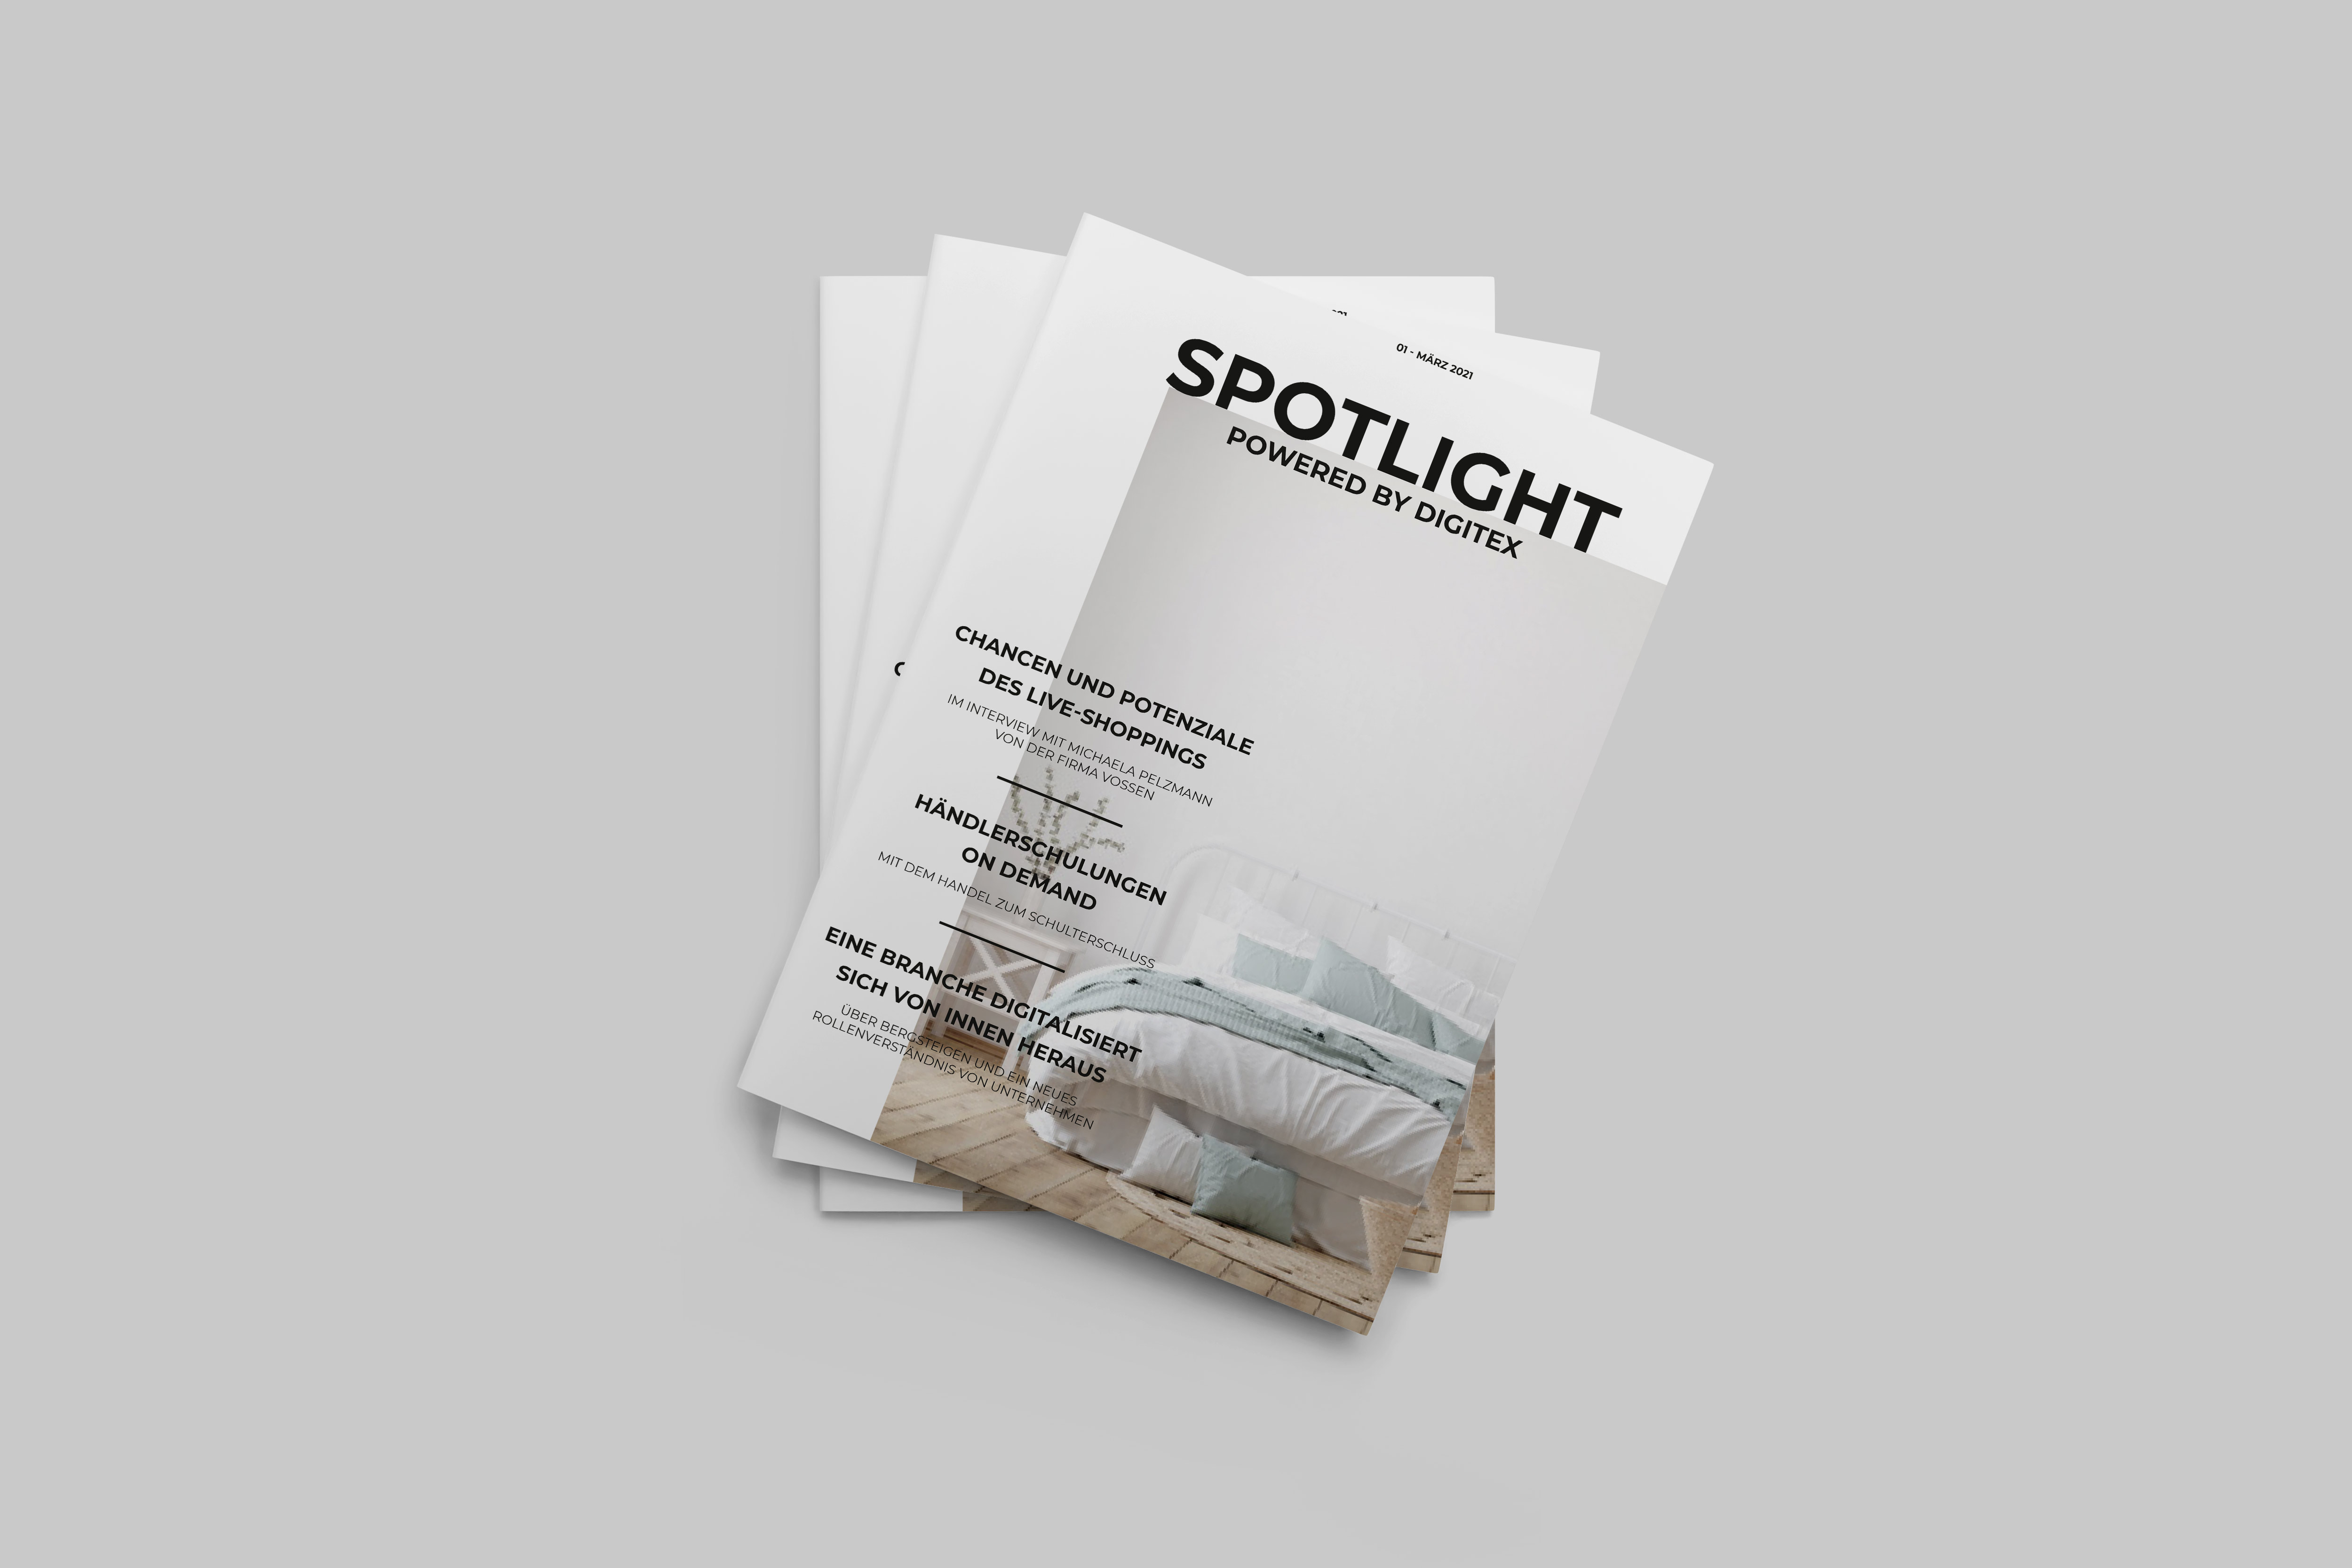 Spotlight DIGITEX